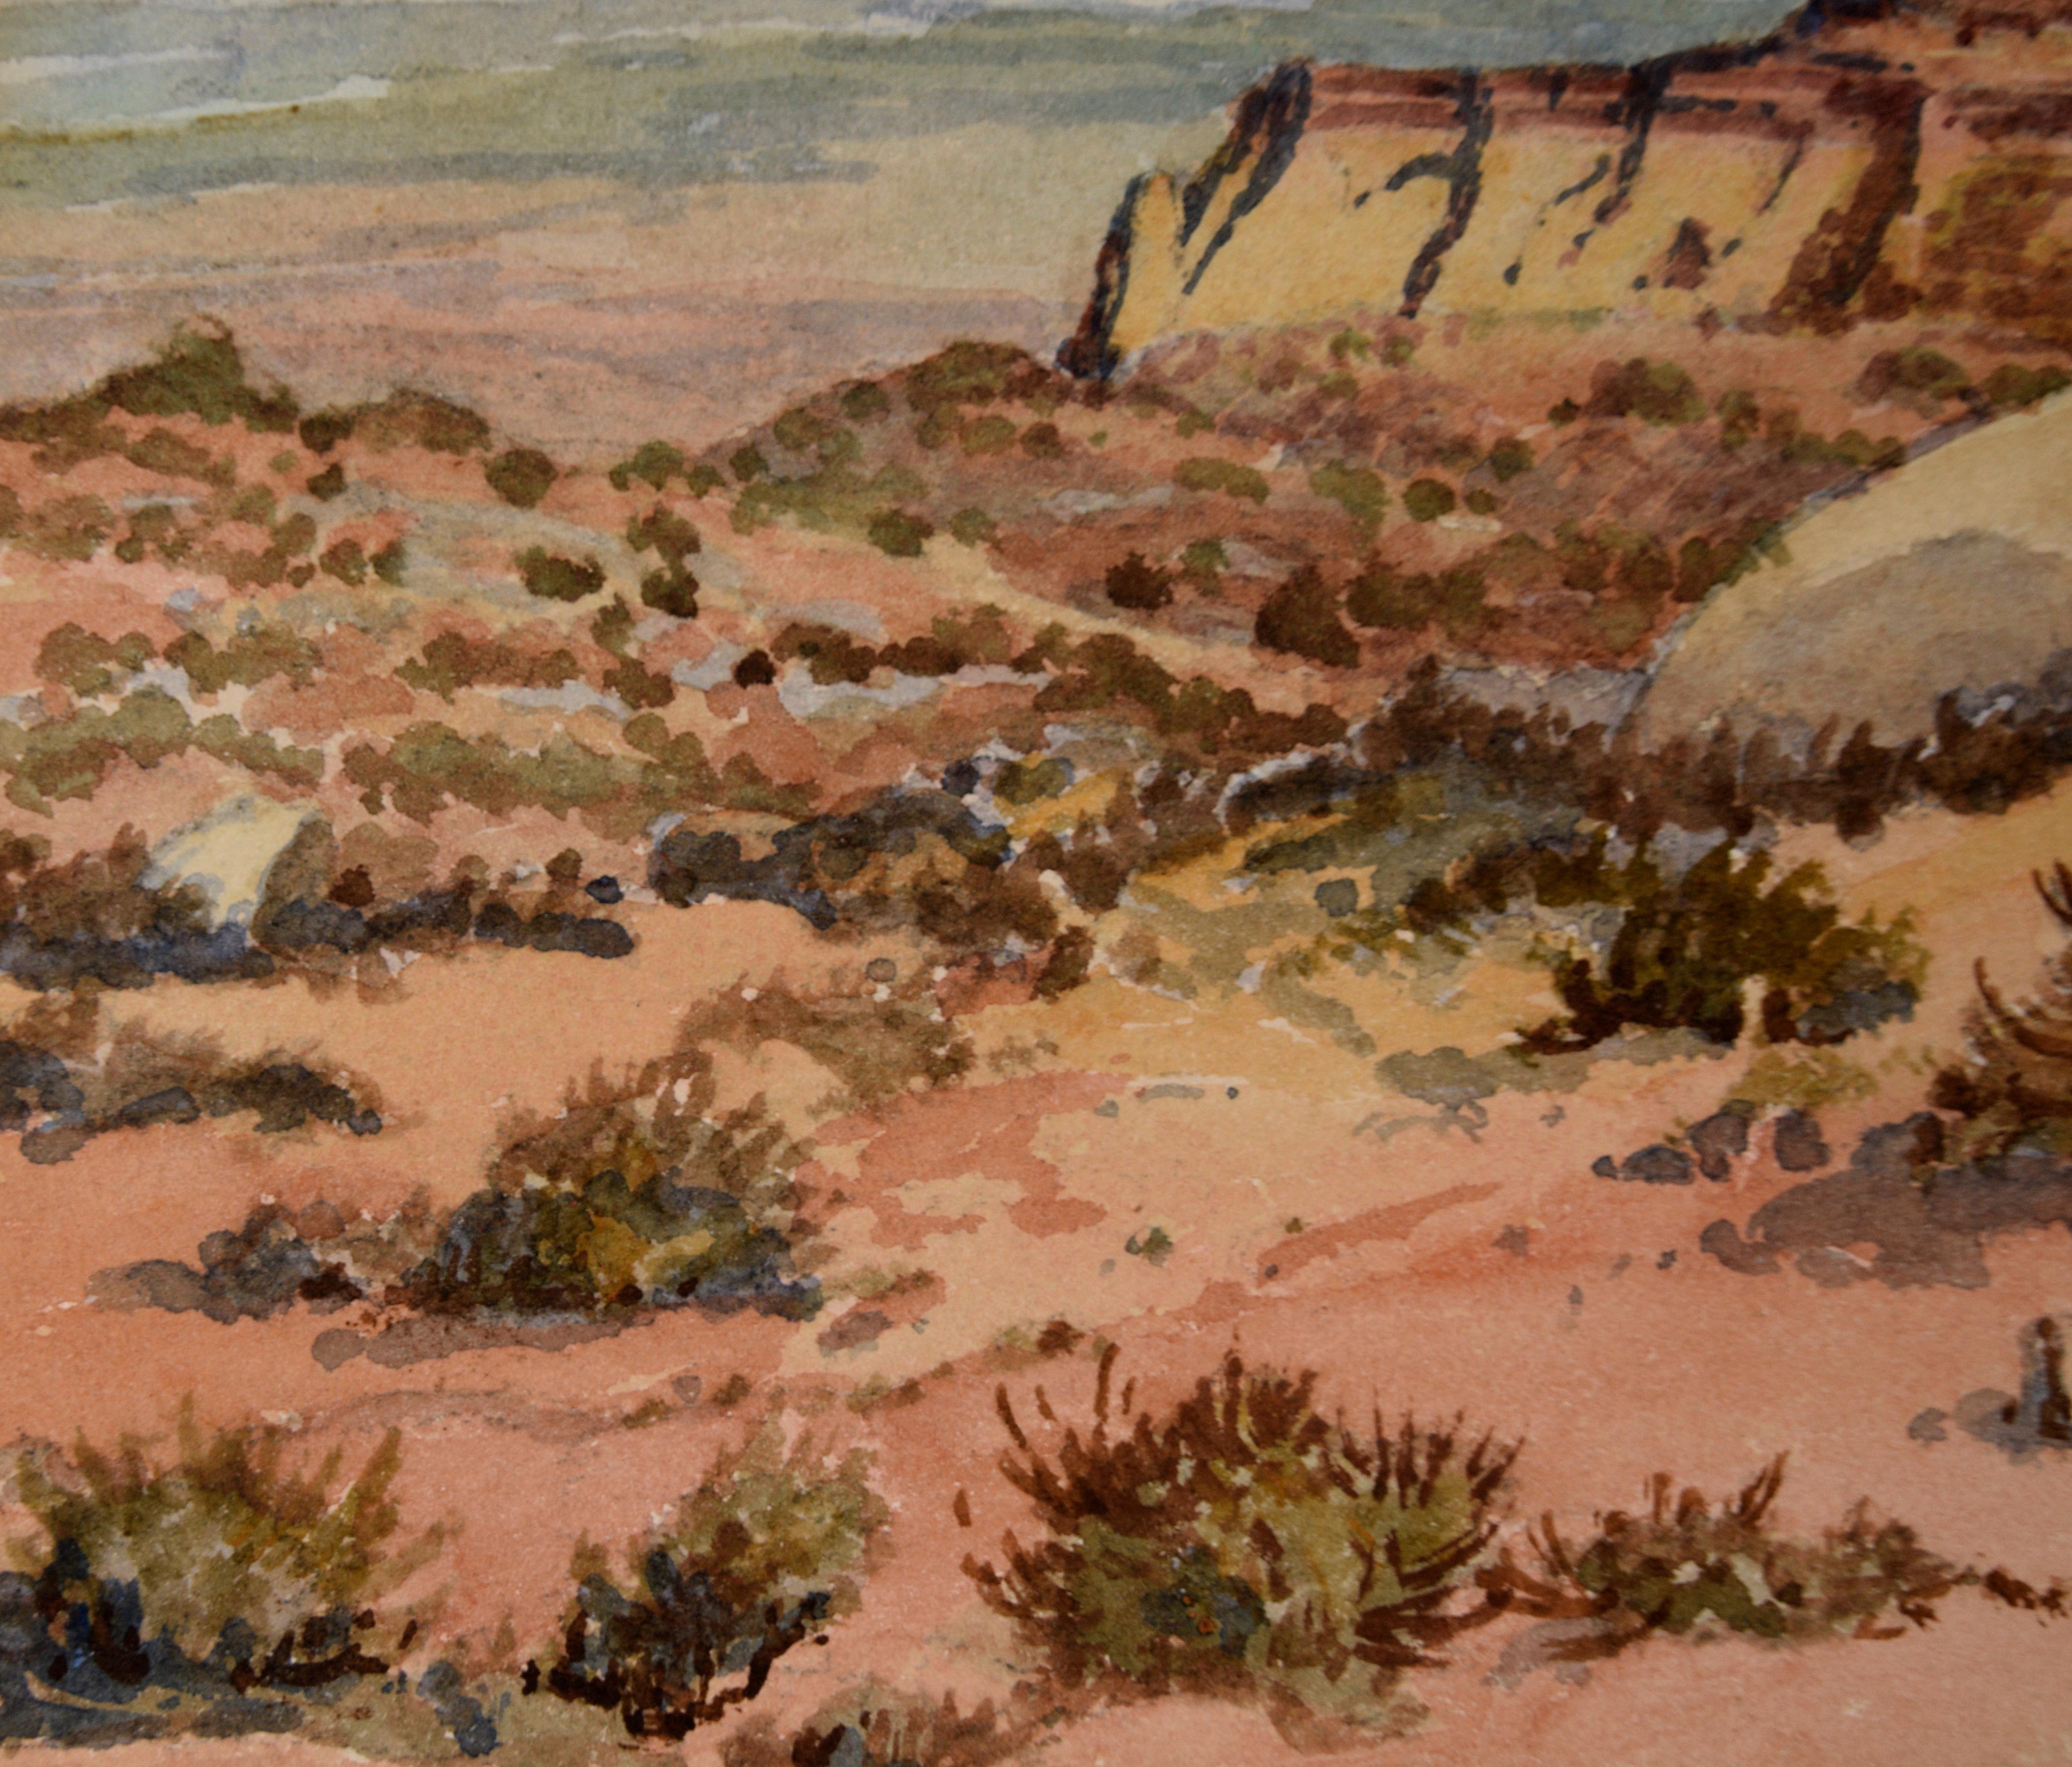 Aquarelle détaillée de Monument Valley par Albert DeRome (américain, 1885-1959). Le spectateur regarde la vallée depuis un point d'observation élevé, avec des mesas imposantes au loin. Au premier plan, il y a quelques arbustes et un petit arbre sur